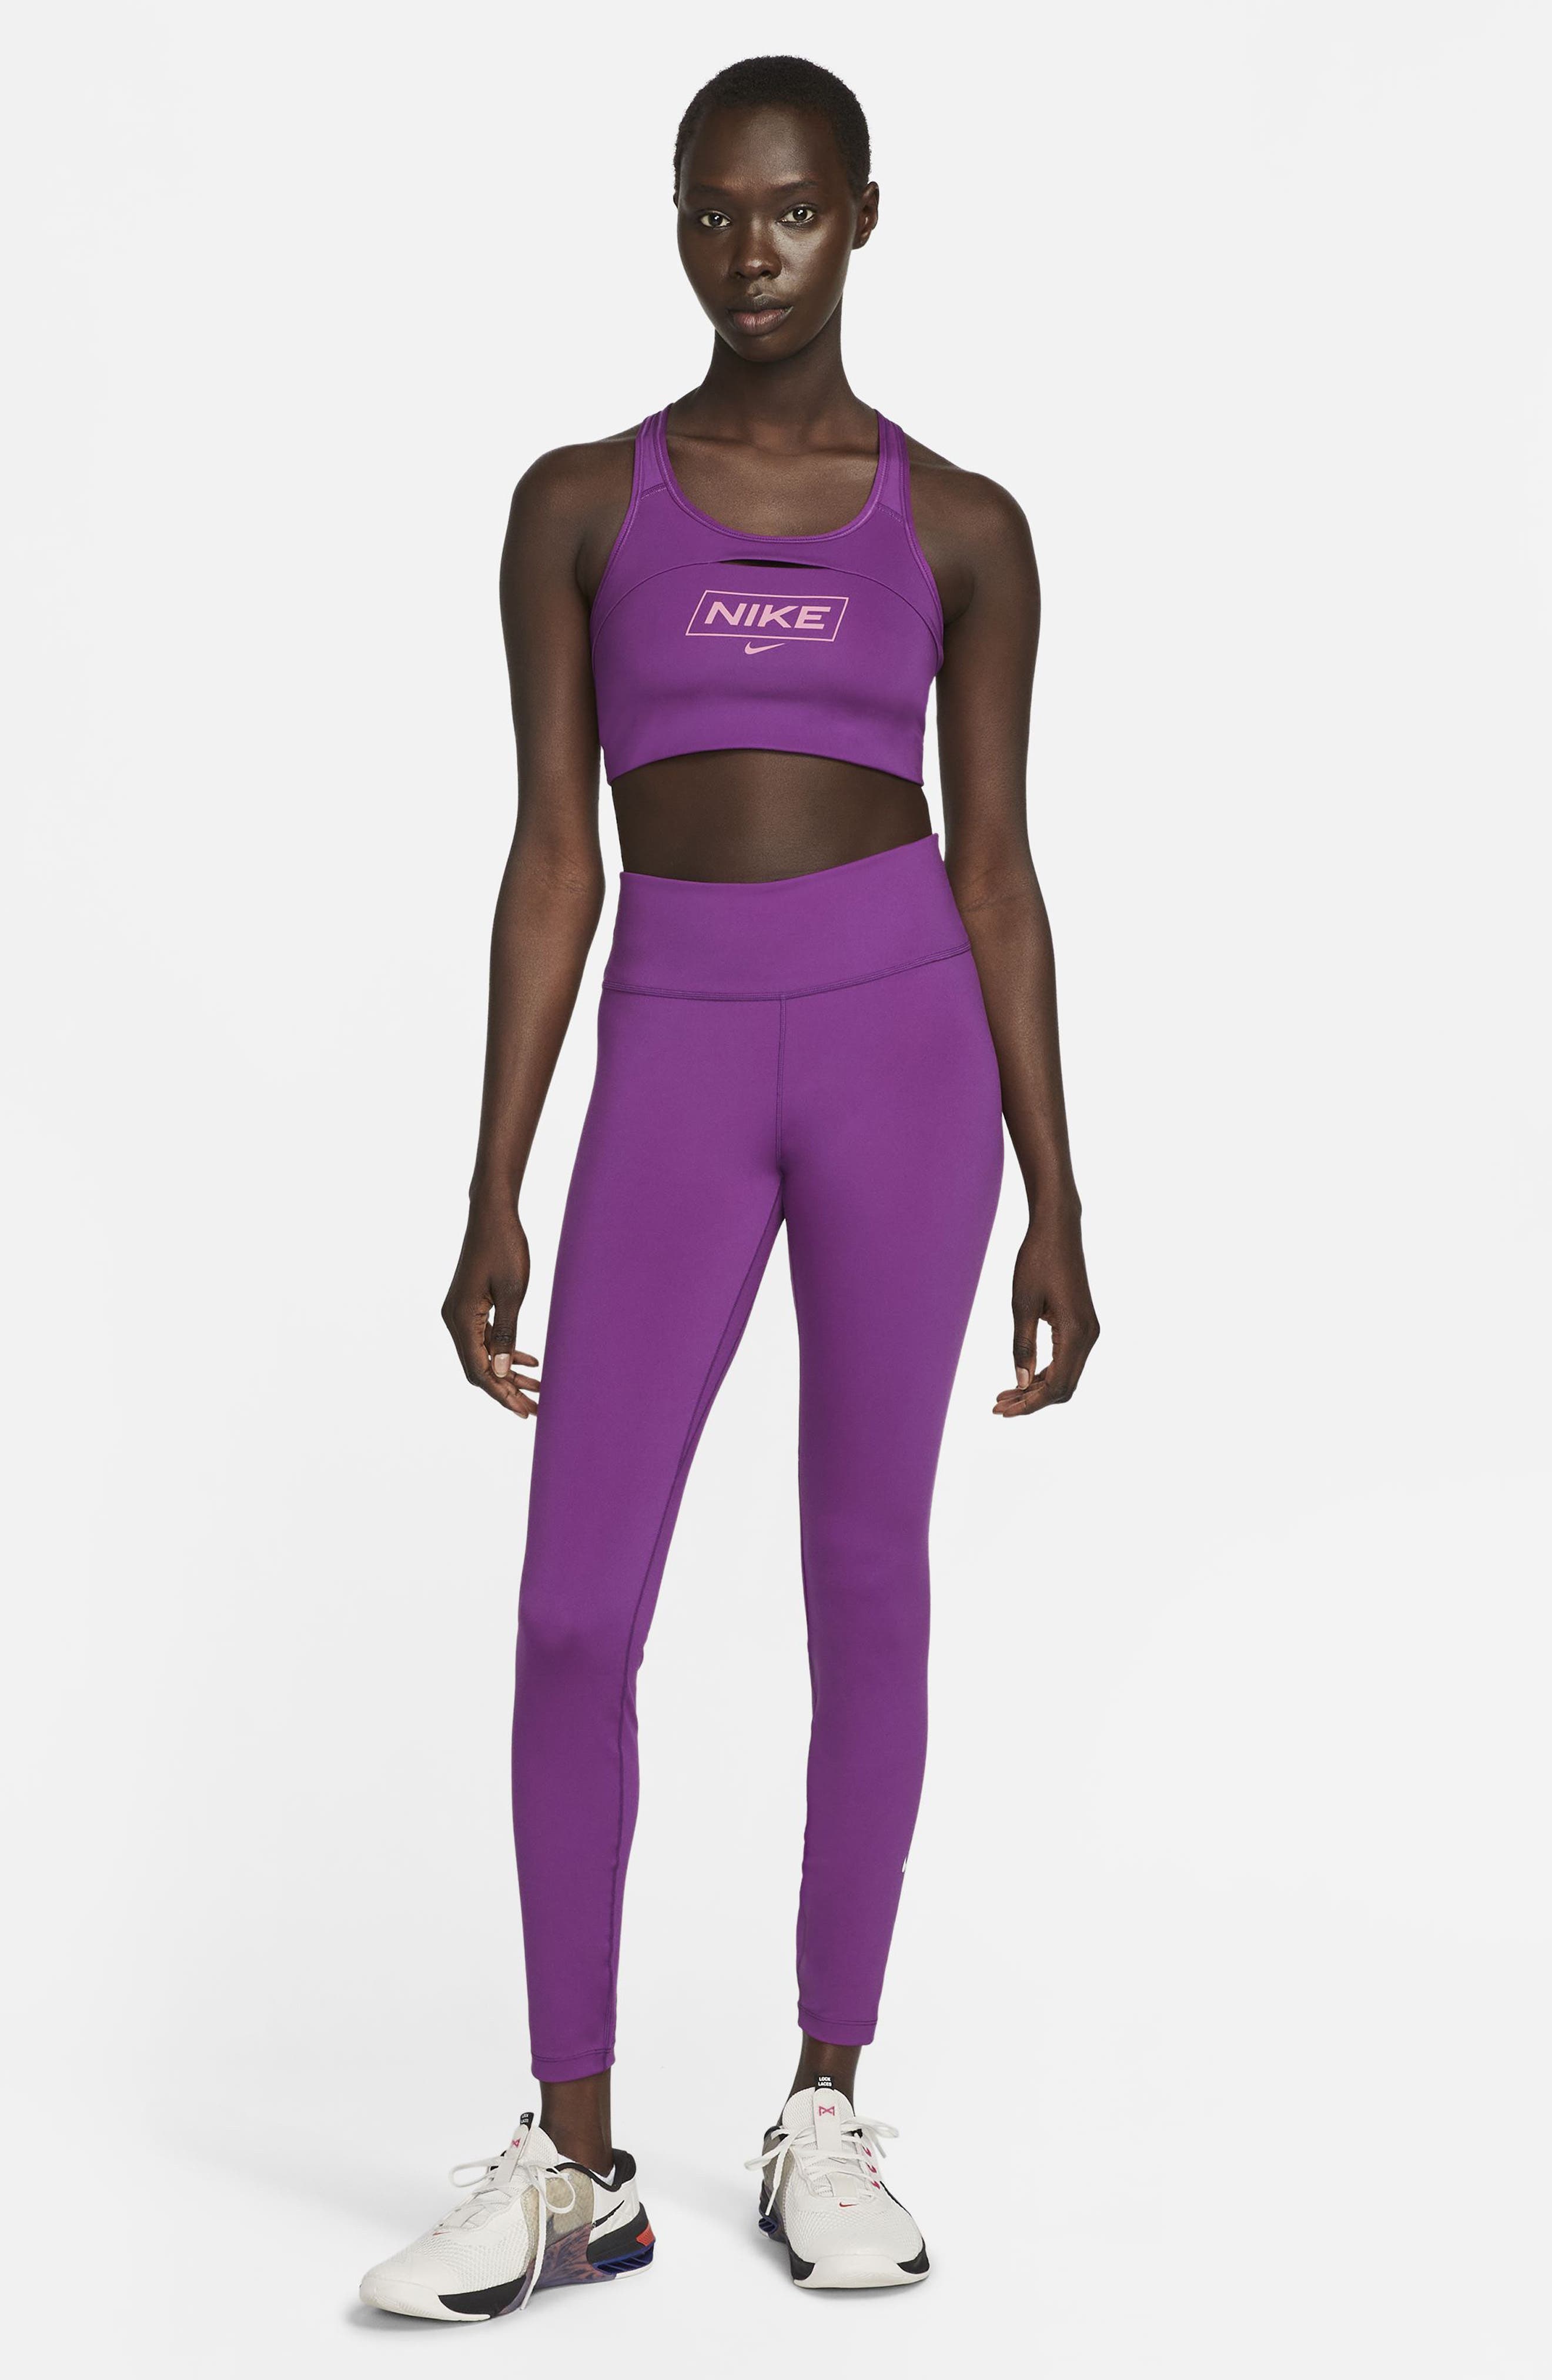 Nike Women's Cropped laced Training Tank Sports Bra (Purple Smoke, X-Small)  